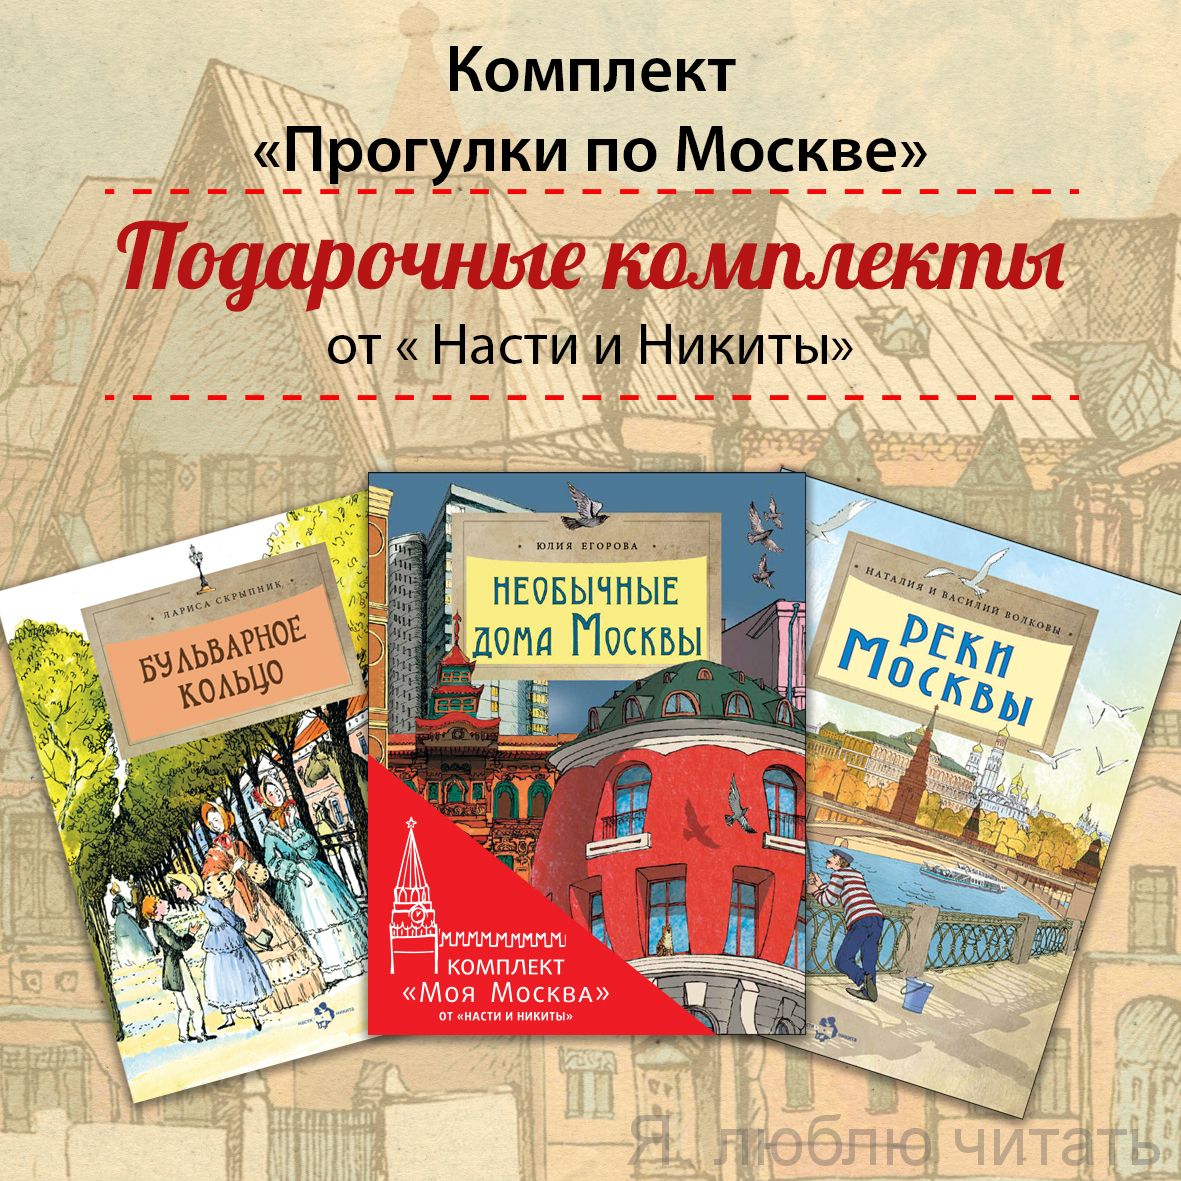 Книжный комплект "Прогулки по Москве"